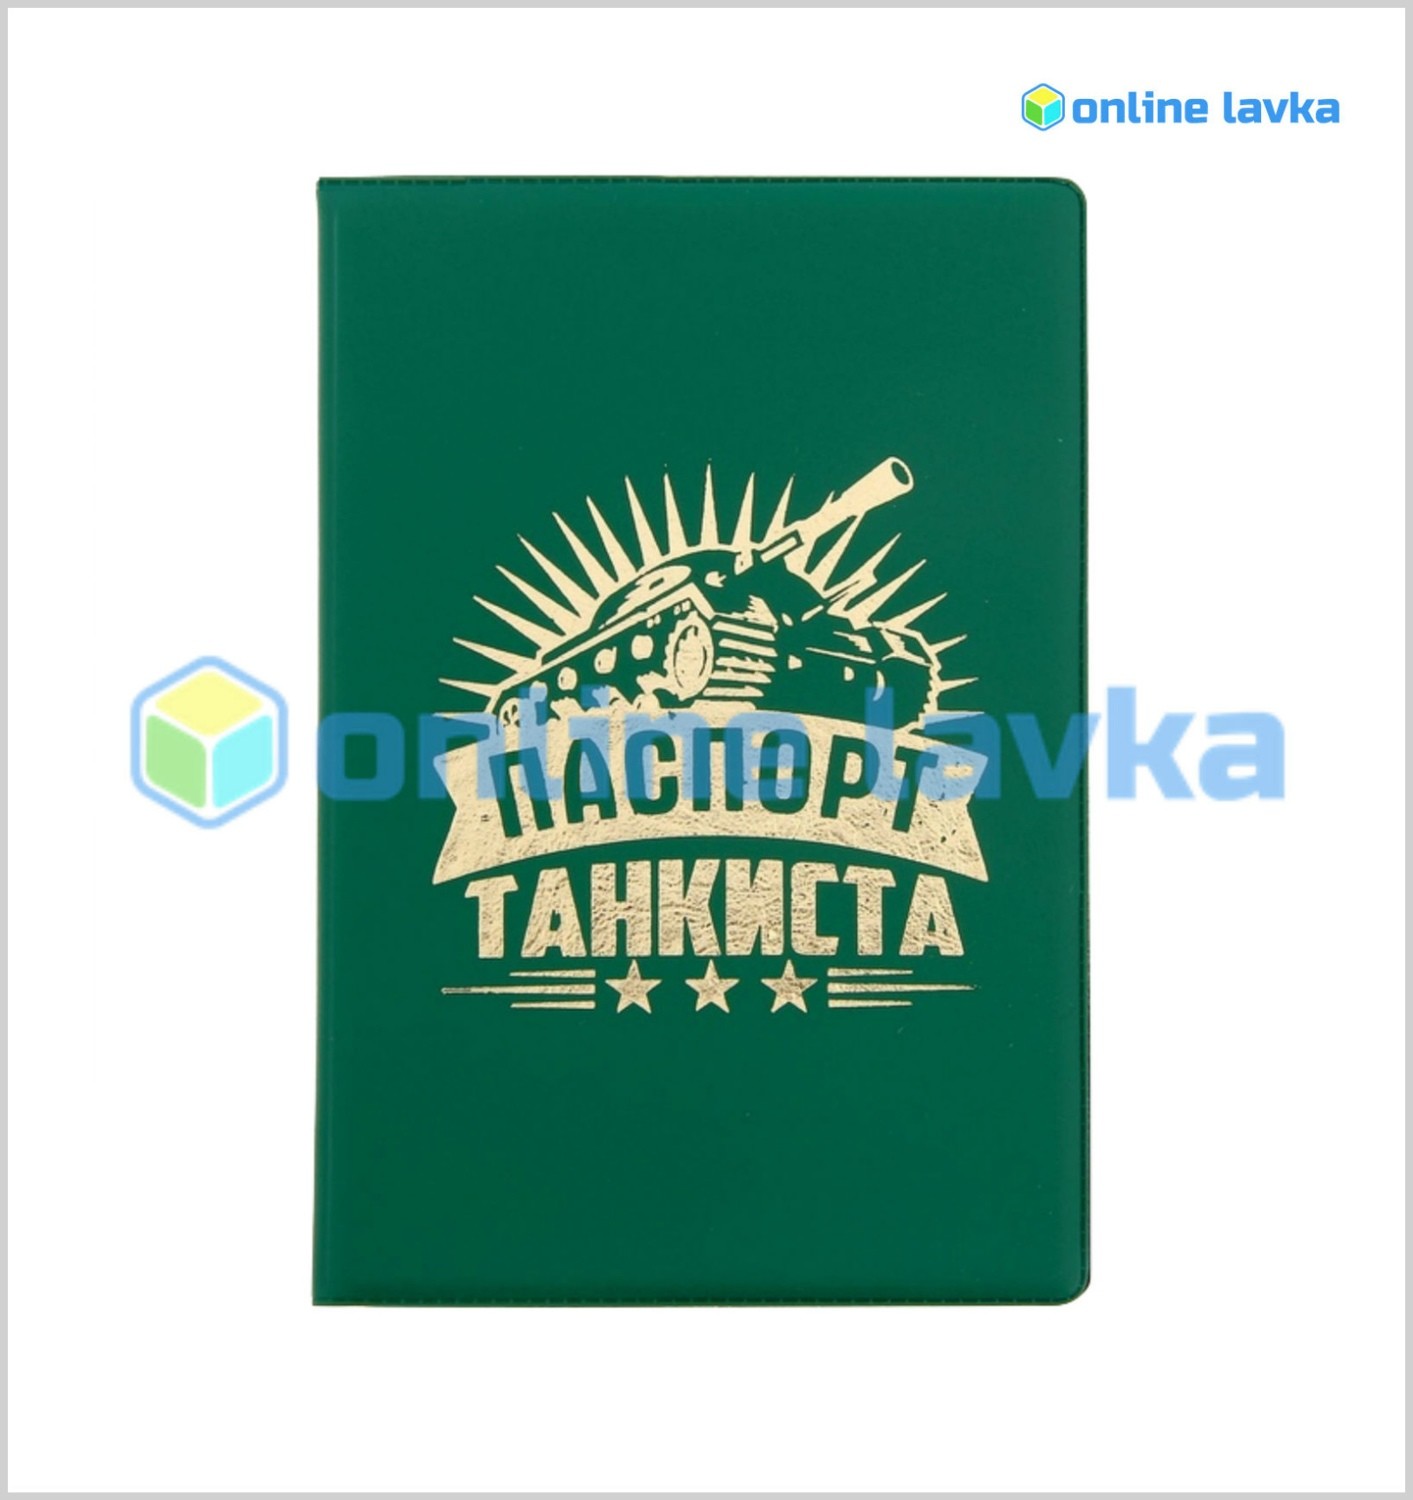 Обложка для паспорта "Паспорт танкиста"